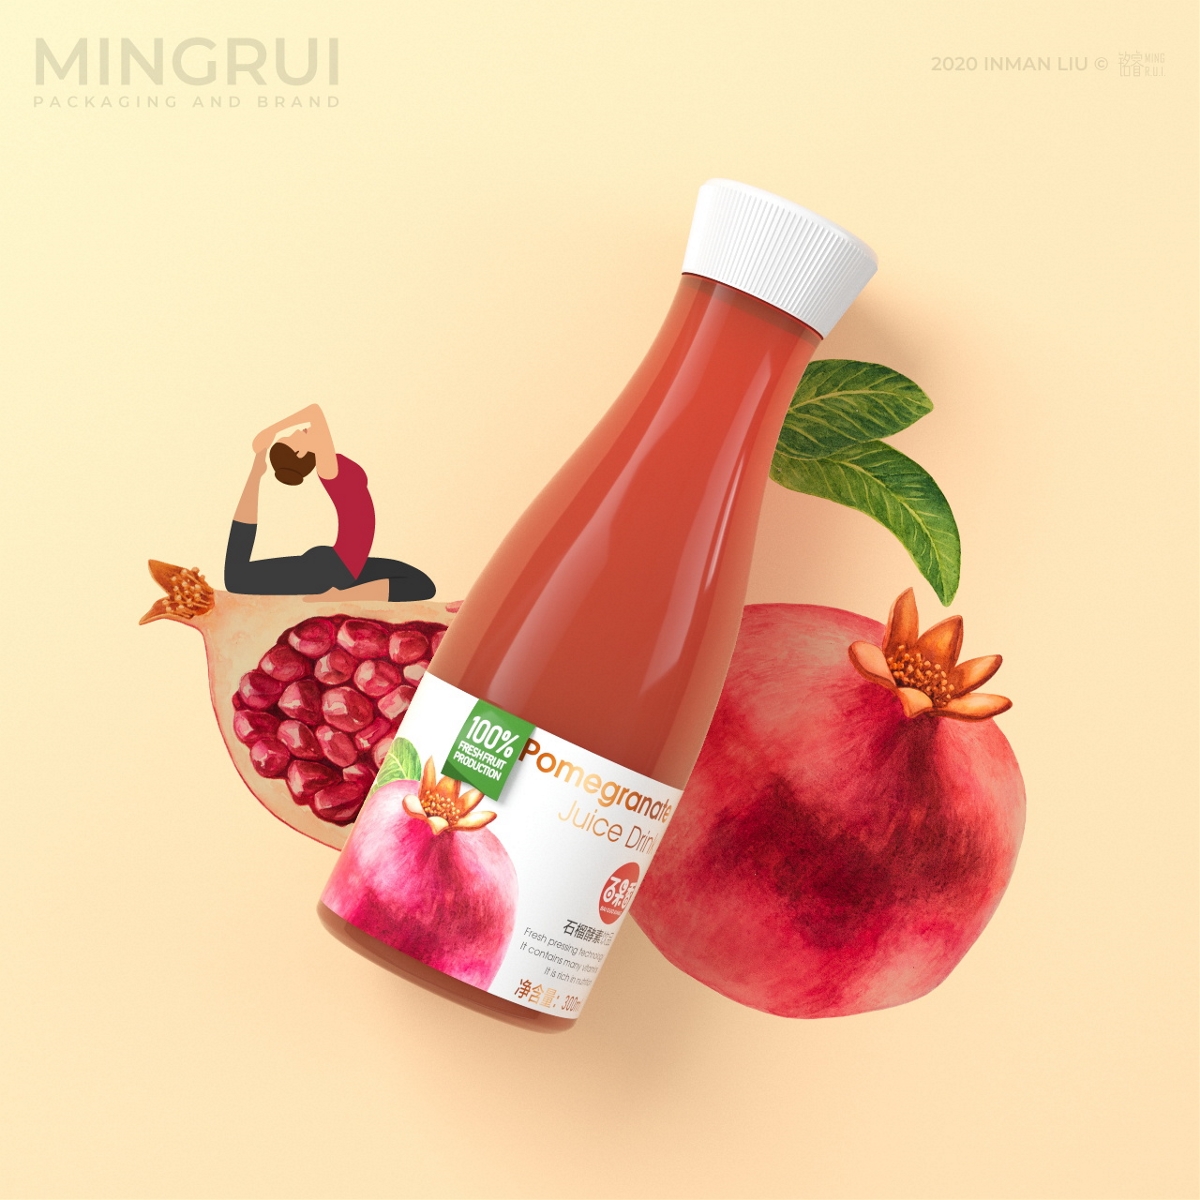 水果酵素饮品 饮料 果汁 健康食品 保健食品 品牌包装设计©刘益铭 原创作品